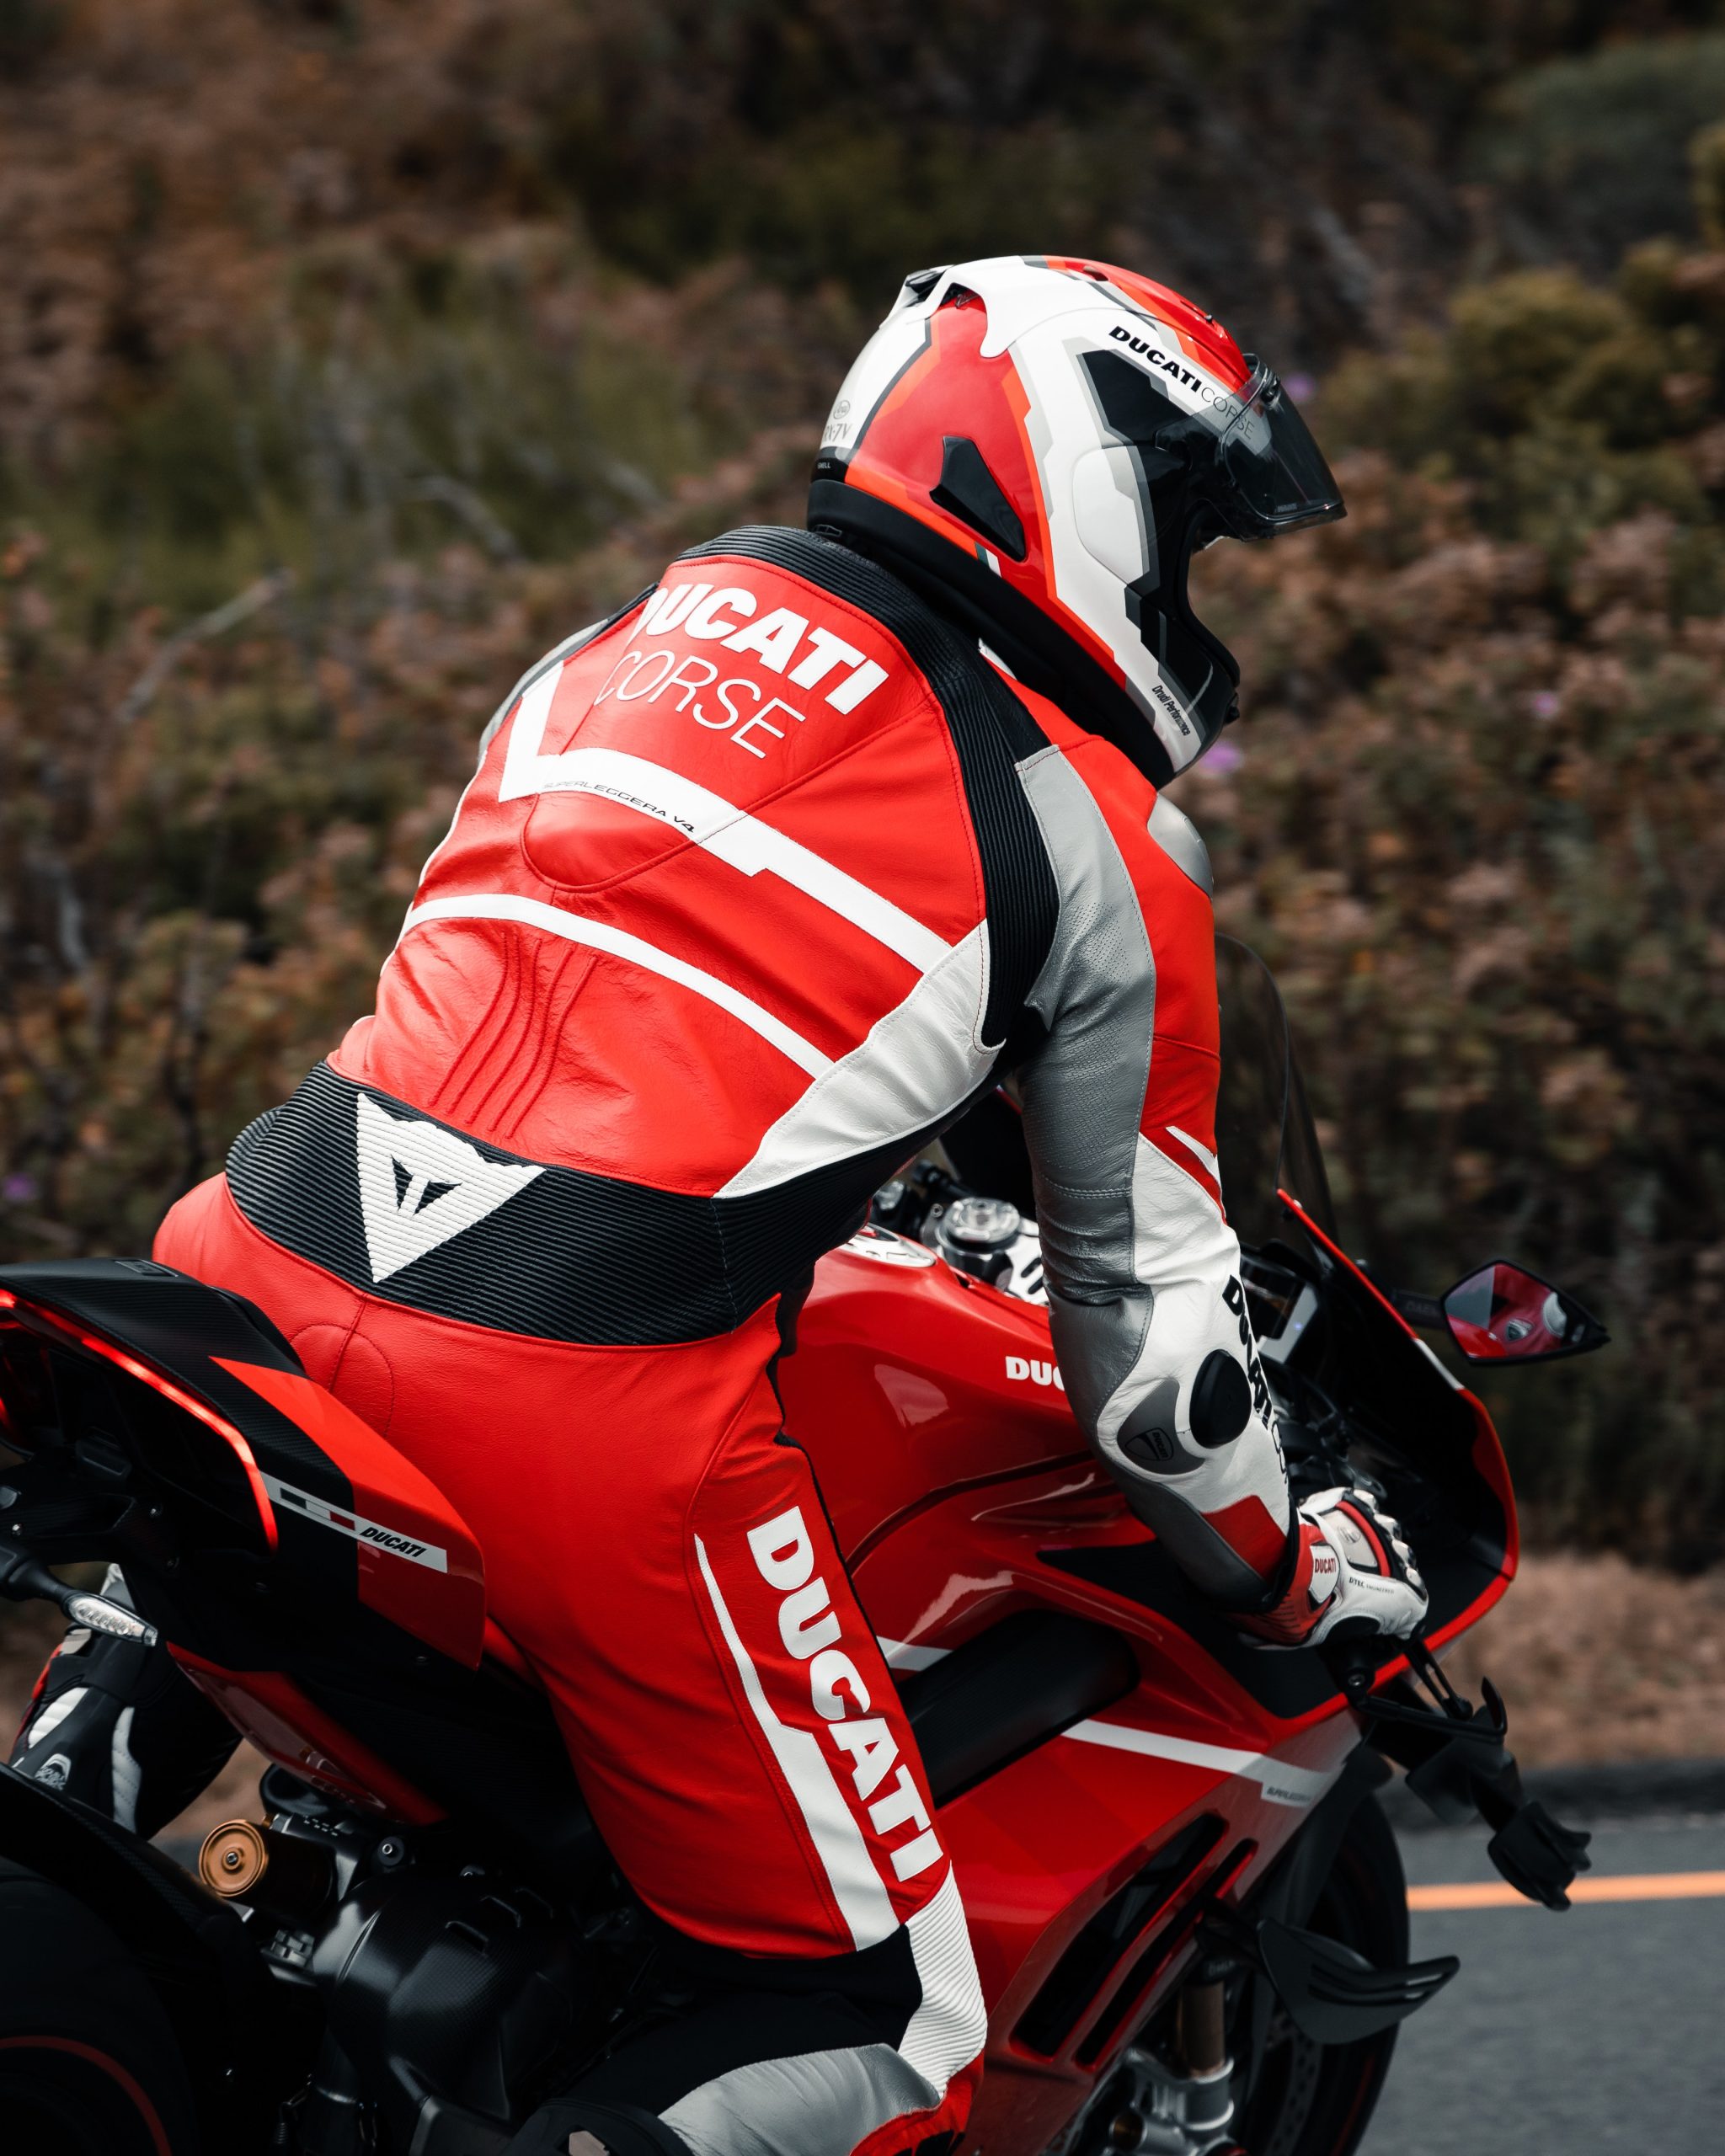 Ducatistas: Explorando la pasión y la emoción de los amantes de las motocicletas Ducati